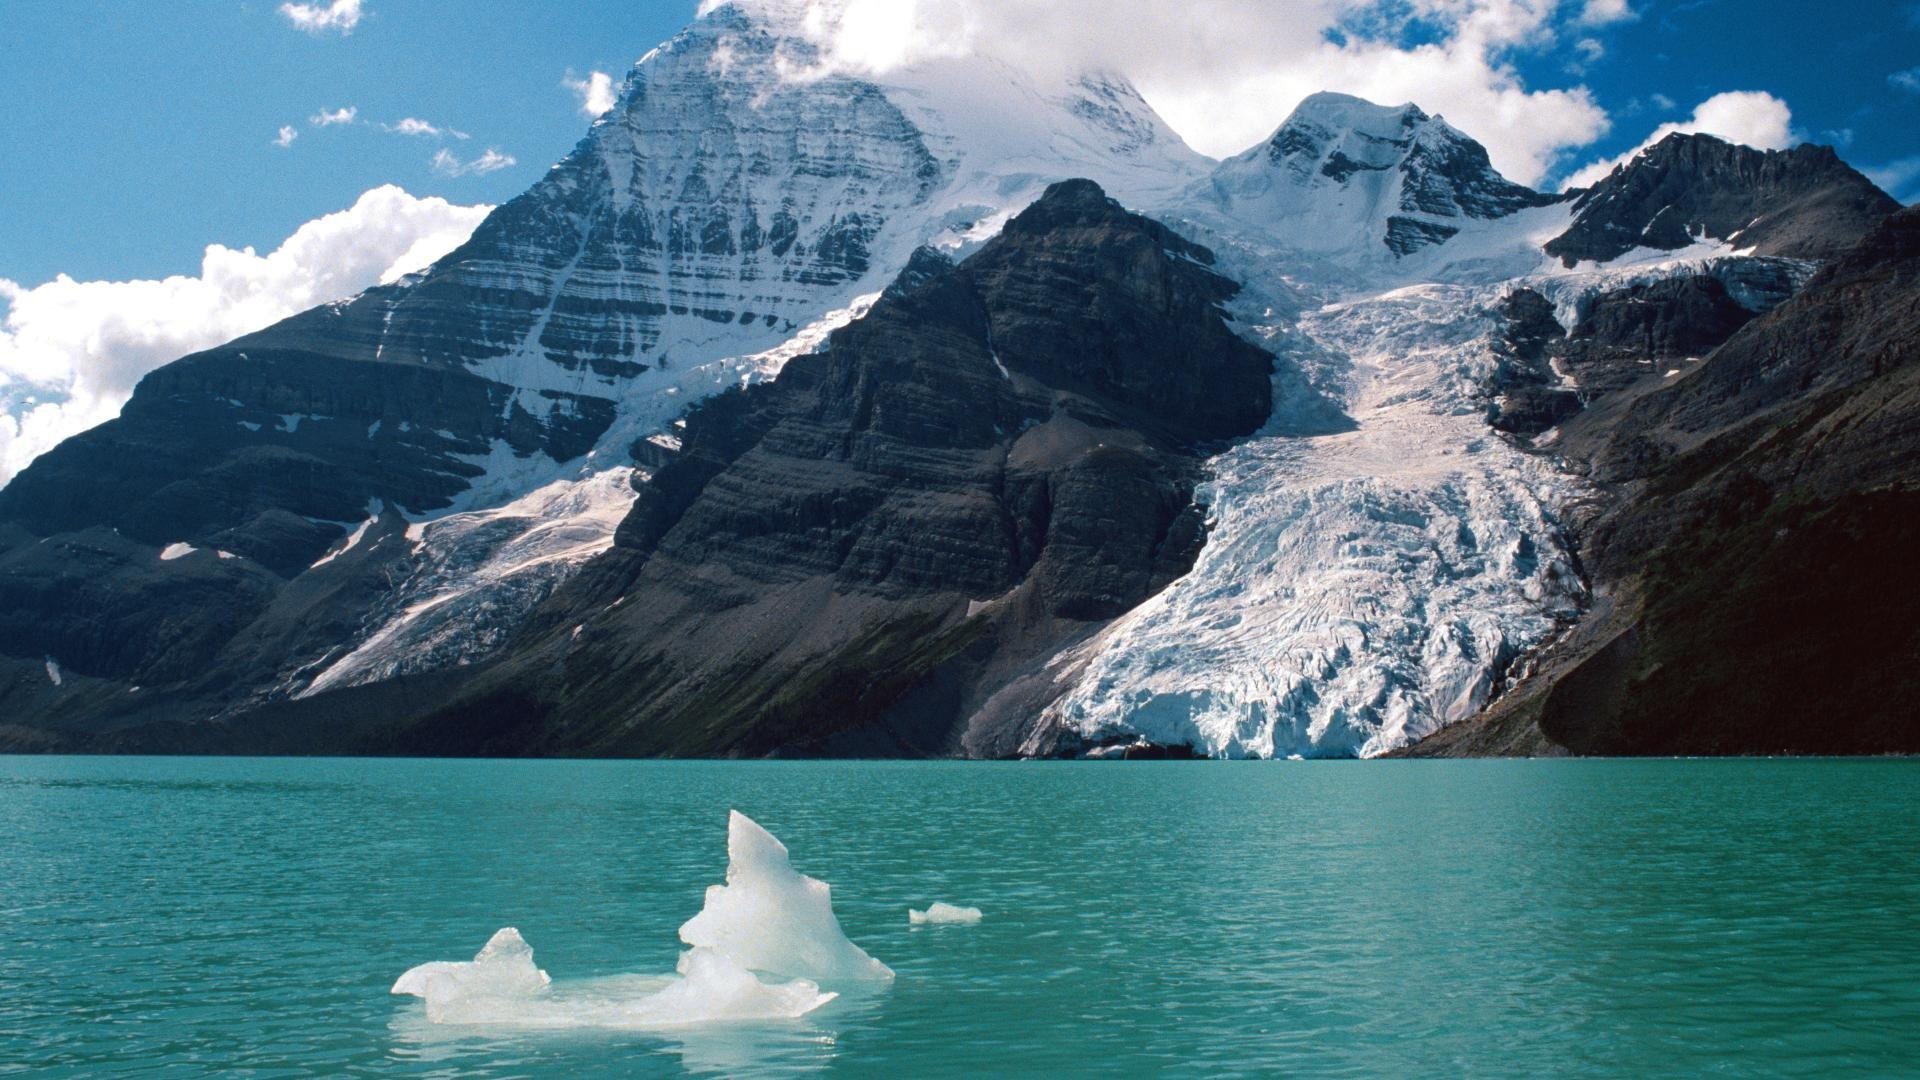 ロッキーズの壁紙,自然の風景,自然,氷河湖,山,氷山